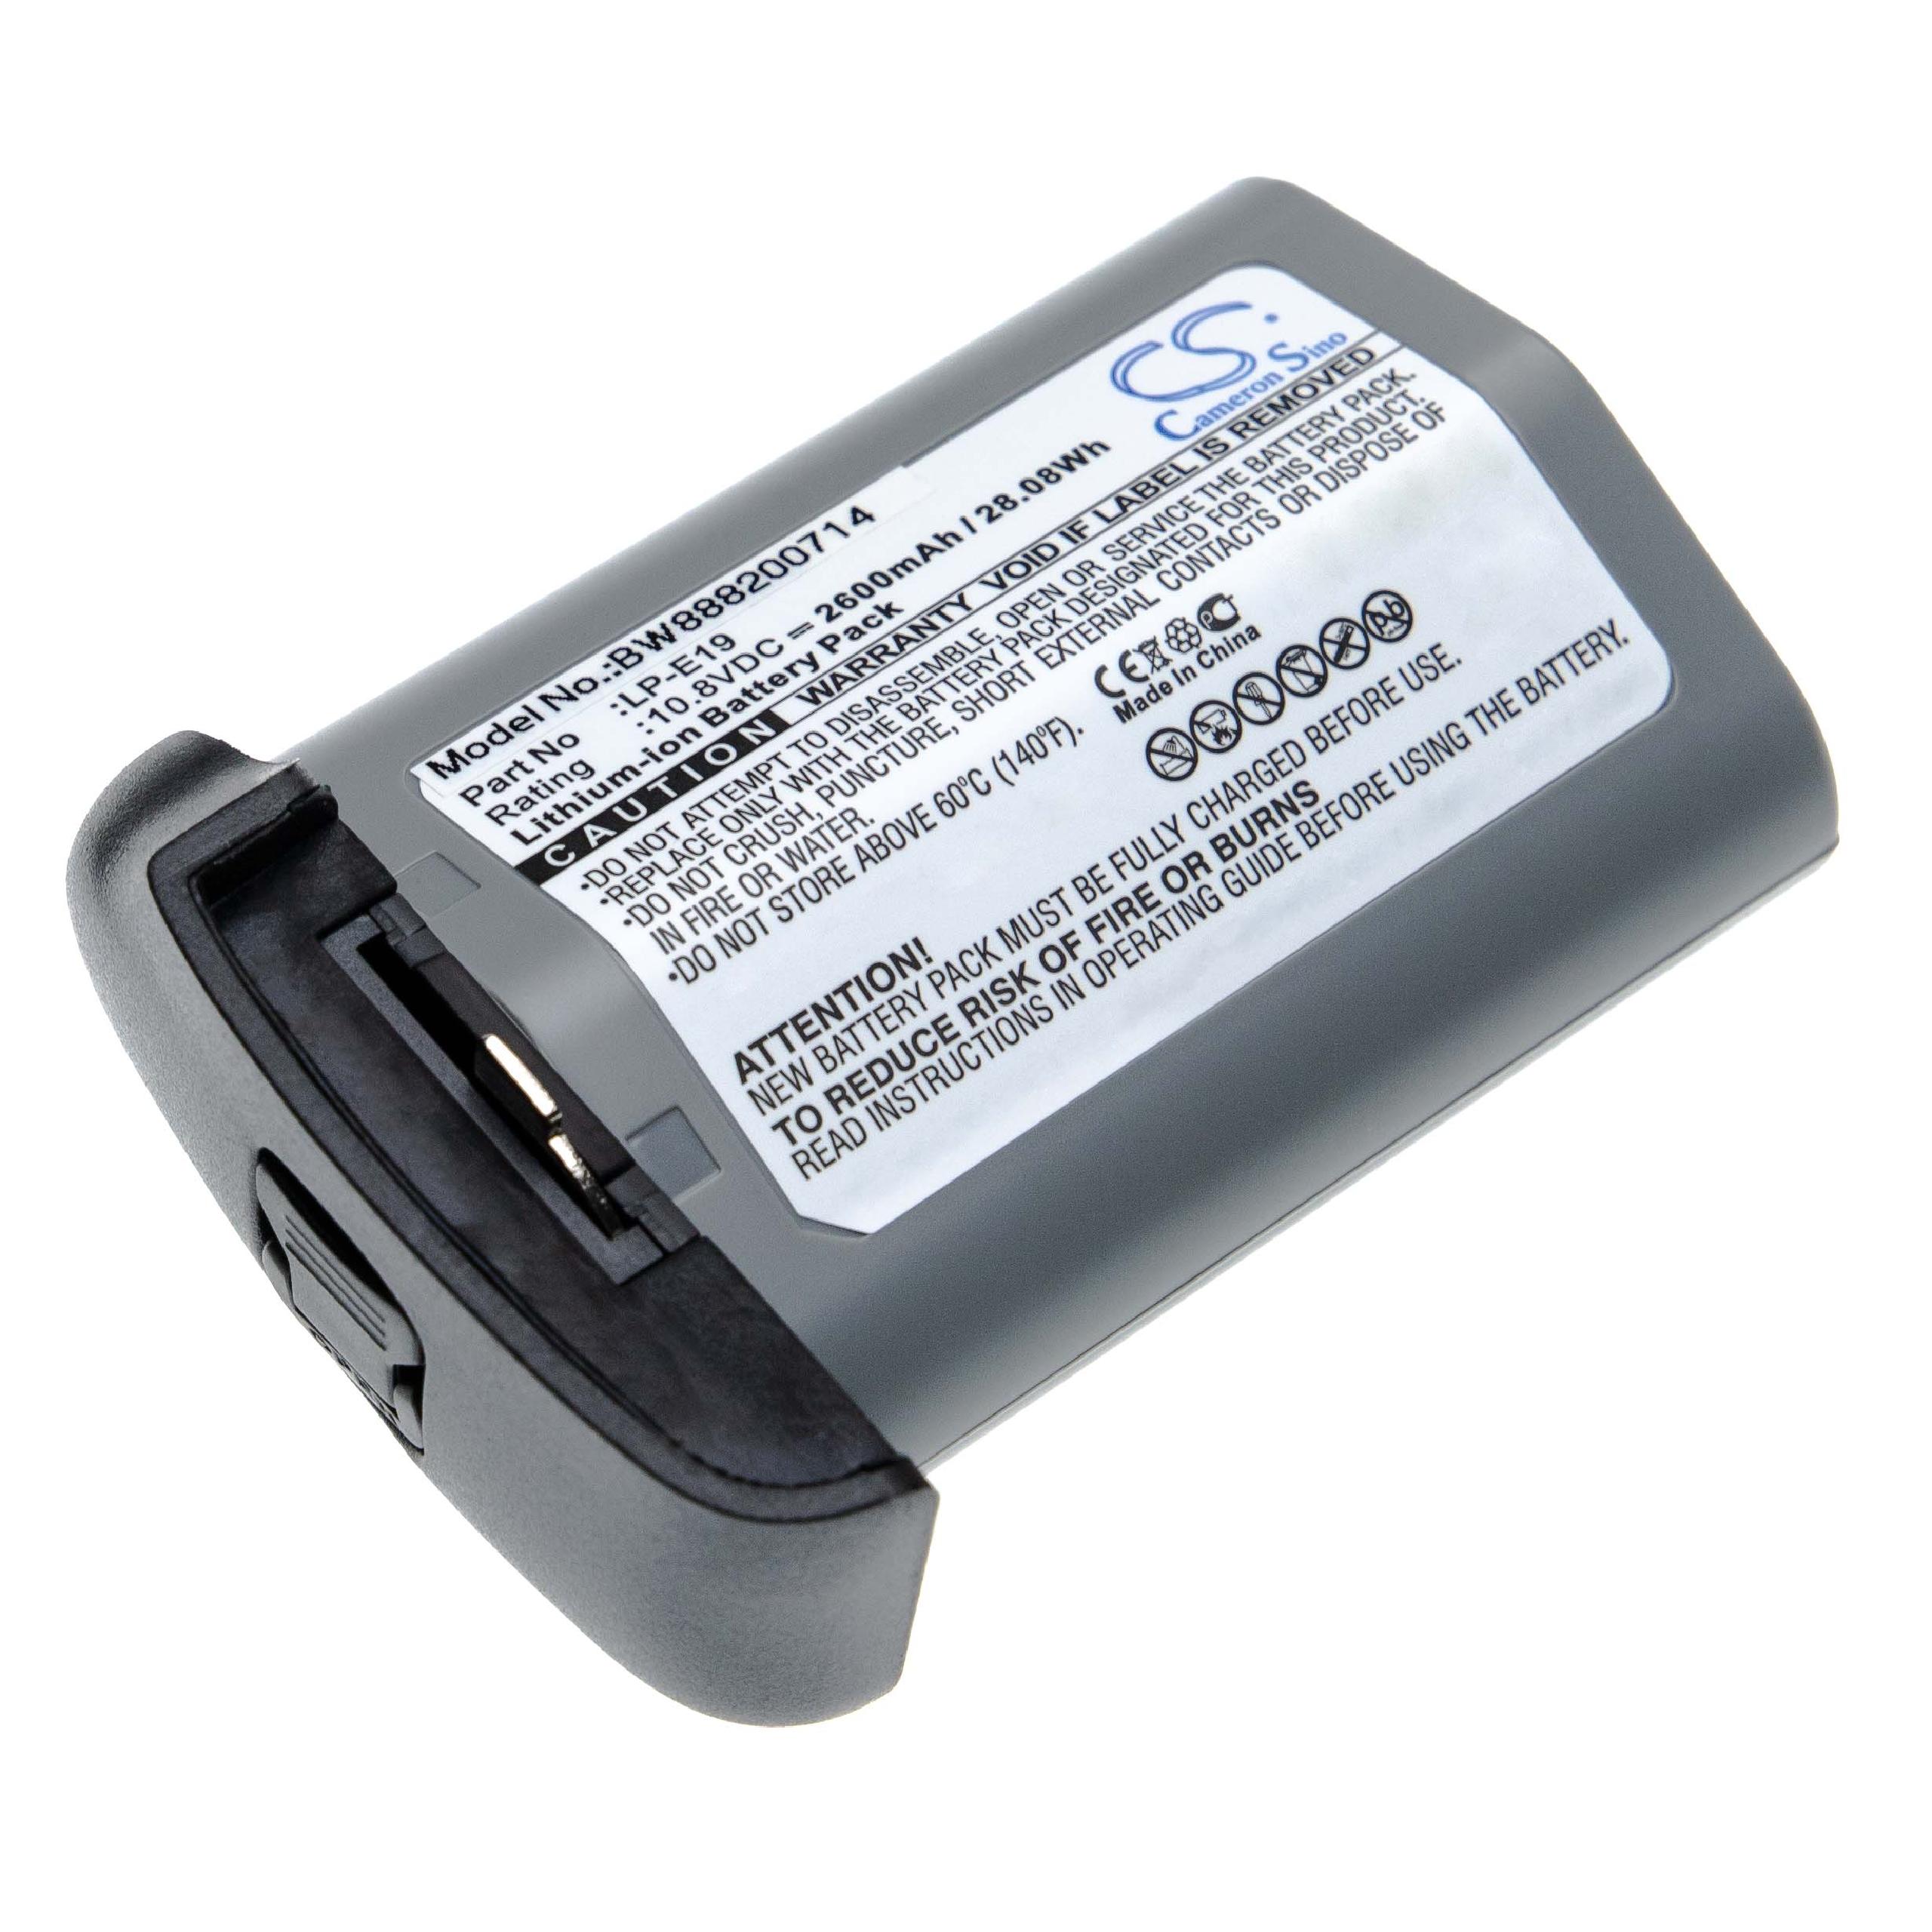 Batterie remplace Canon LP-E19 pour appareil photo - 2600mAh 10,8V Li-ion